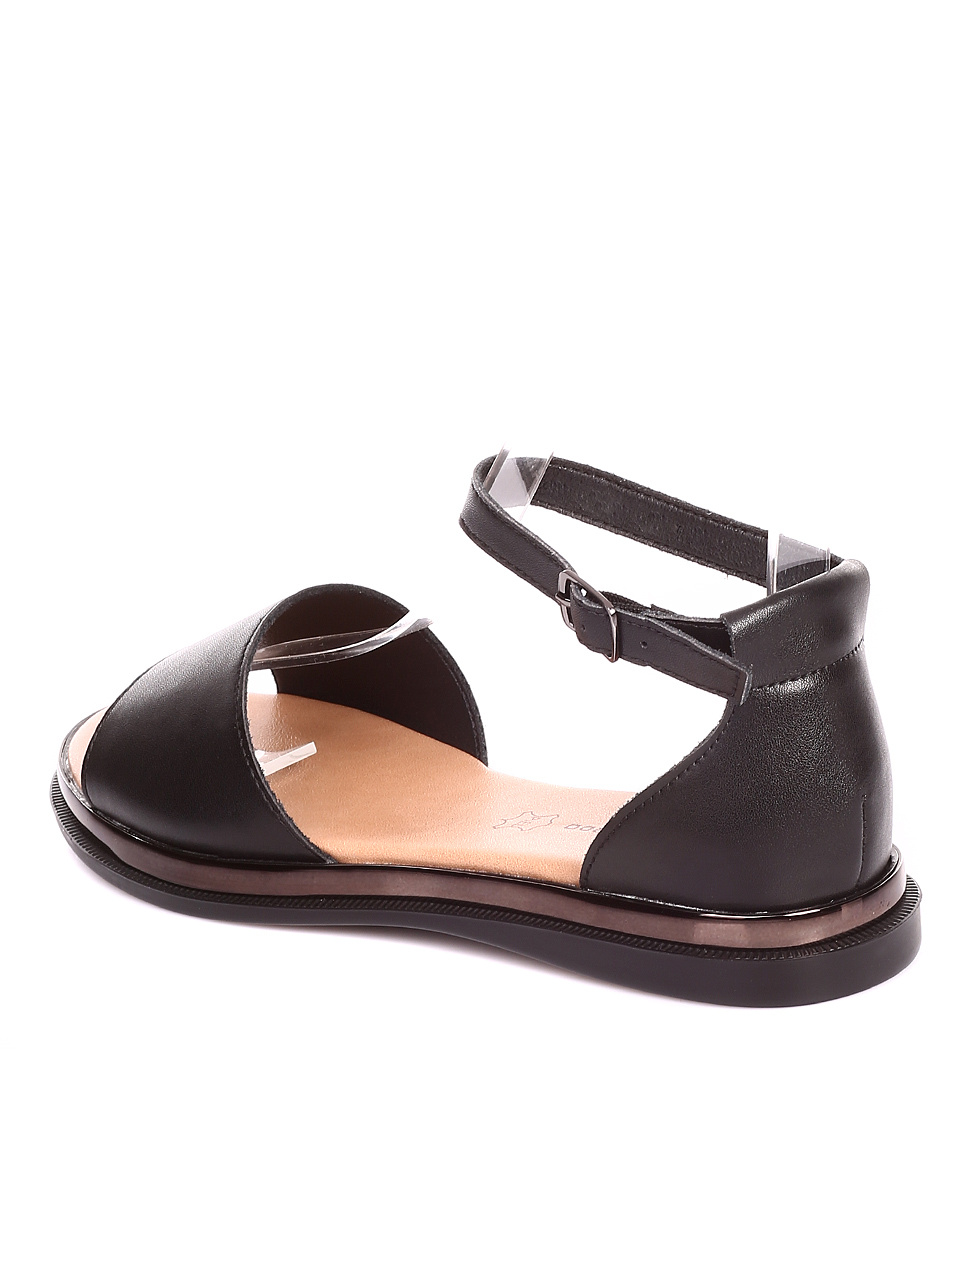 Ежедневни дамски равни сандали от естествена кожа в черно 4AF-22191 black (24175) (21174)